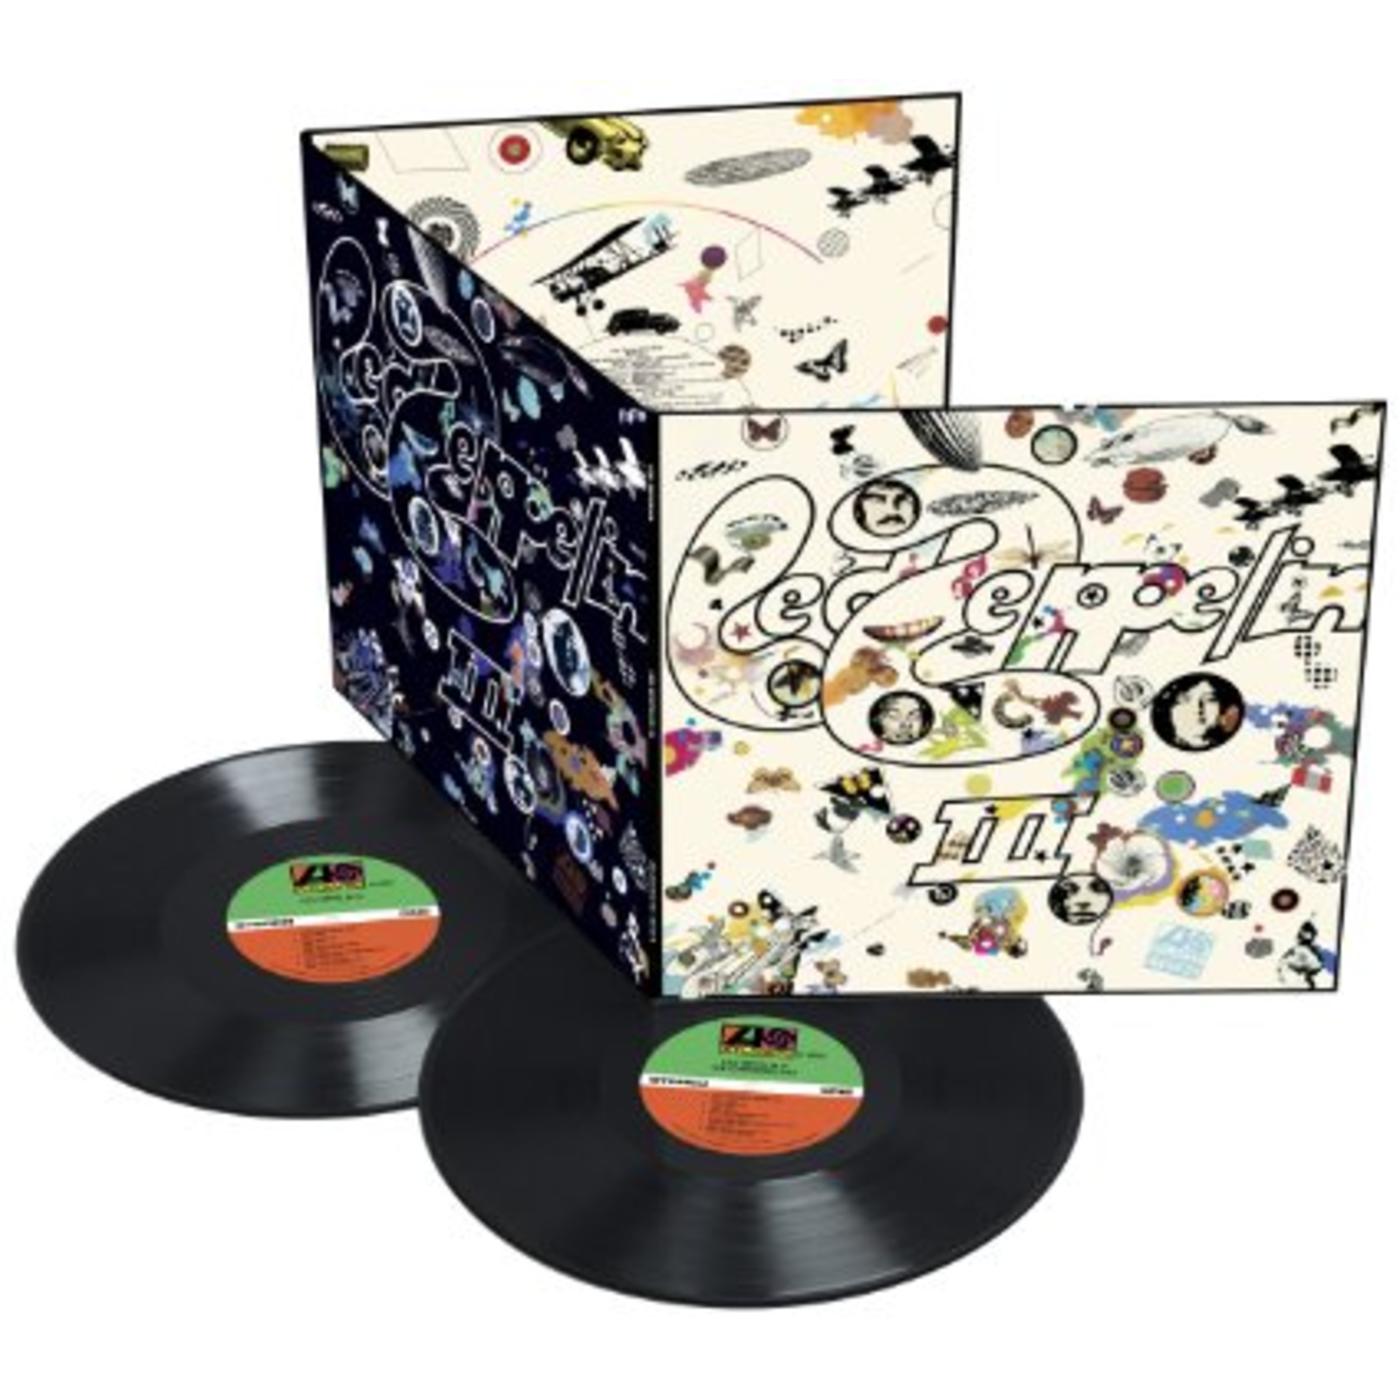 Led Zeppelin III - Deluxe Edition Remastered Vinyl